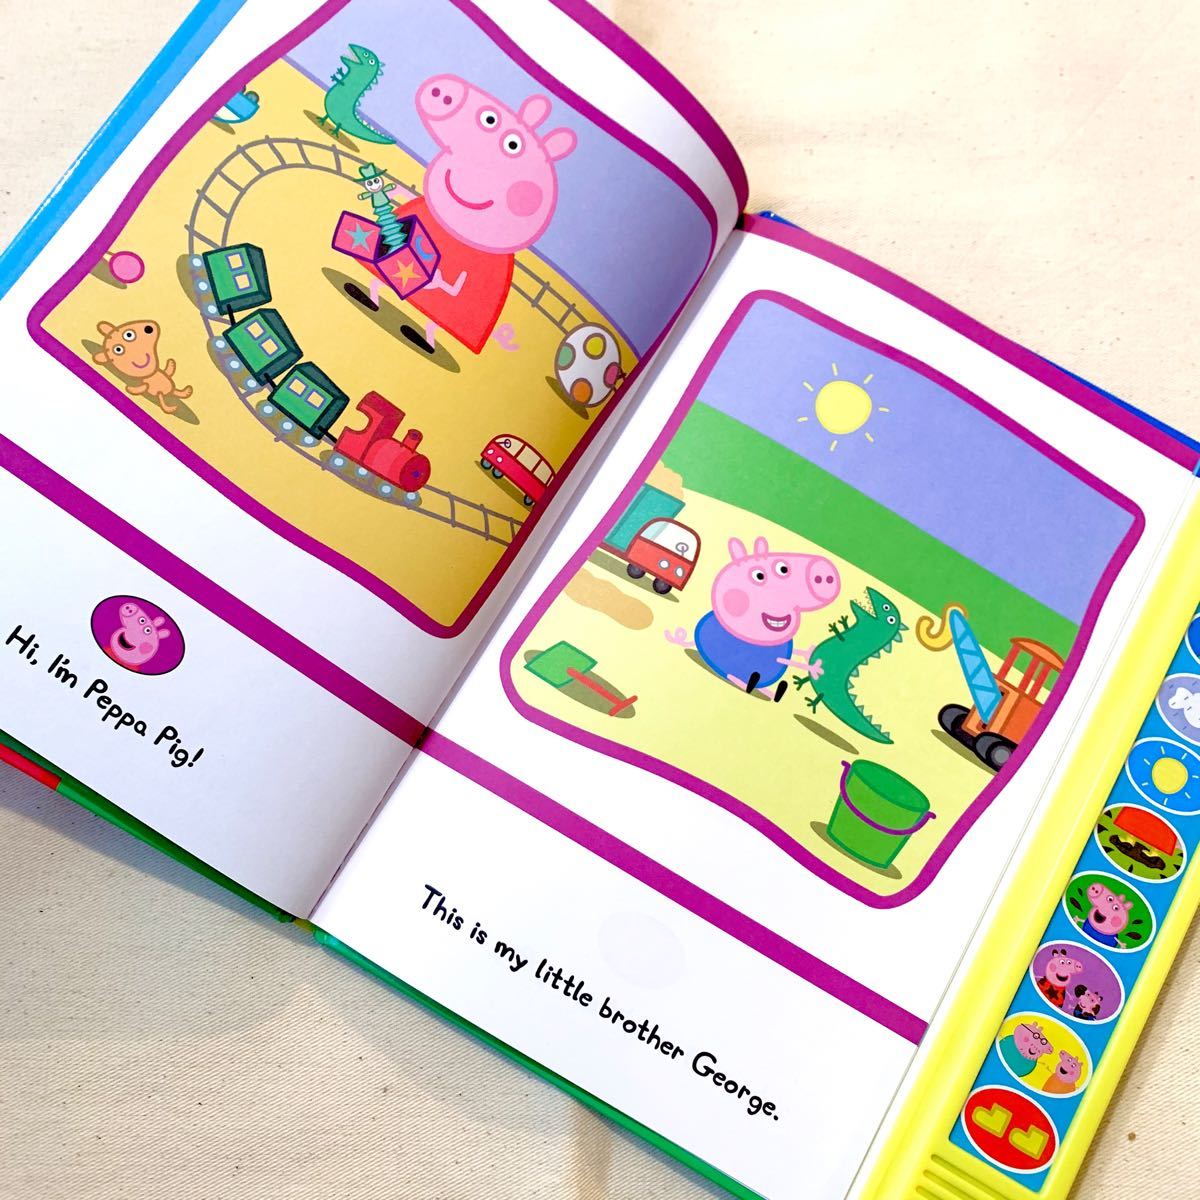 【新品】ペッパピッグ 英語絵本 Peppa Pig ディズニージュニア 知育絵本